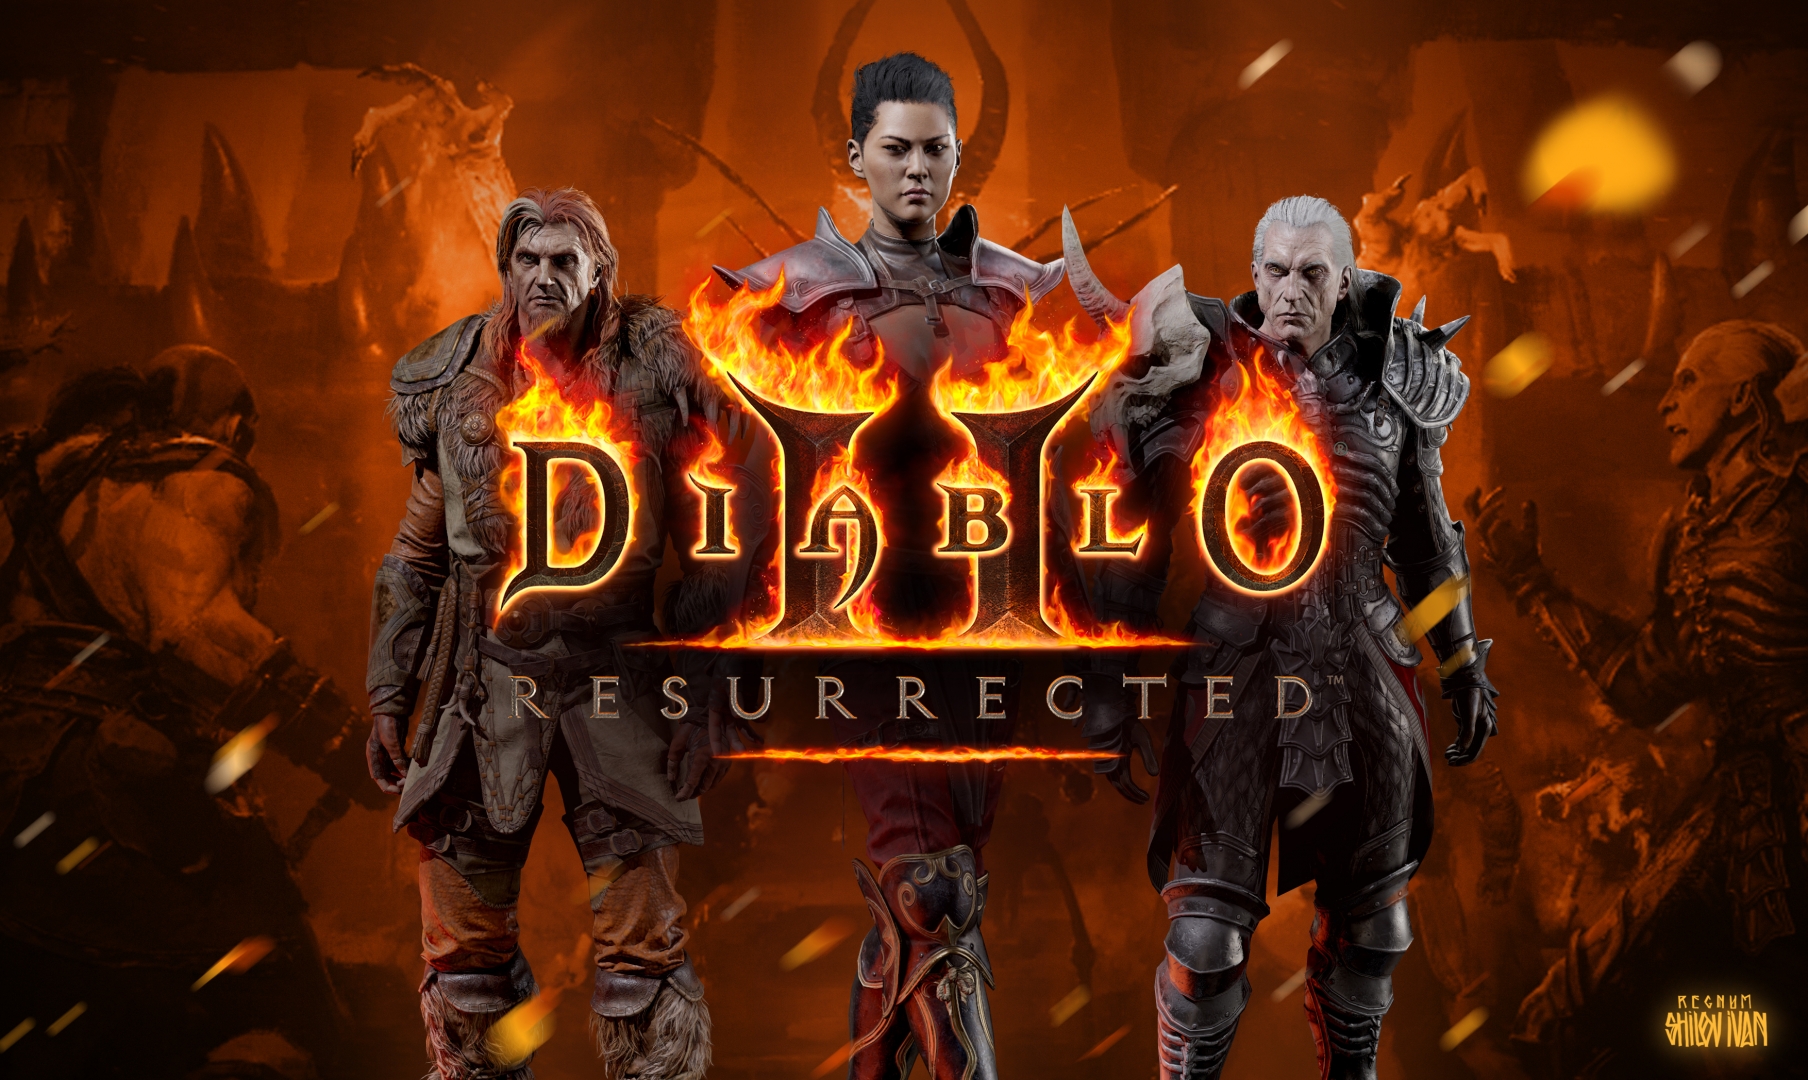 Nintendo diablo 2. Diablo® II (2): resurrected. Diablo 2 resurrected. Diablo II resurrected. Diablo 2 resurrected Diablo.